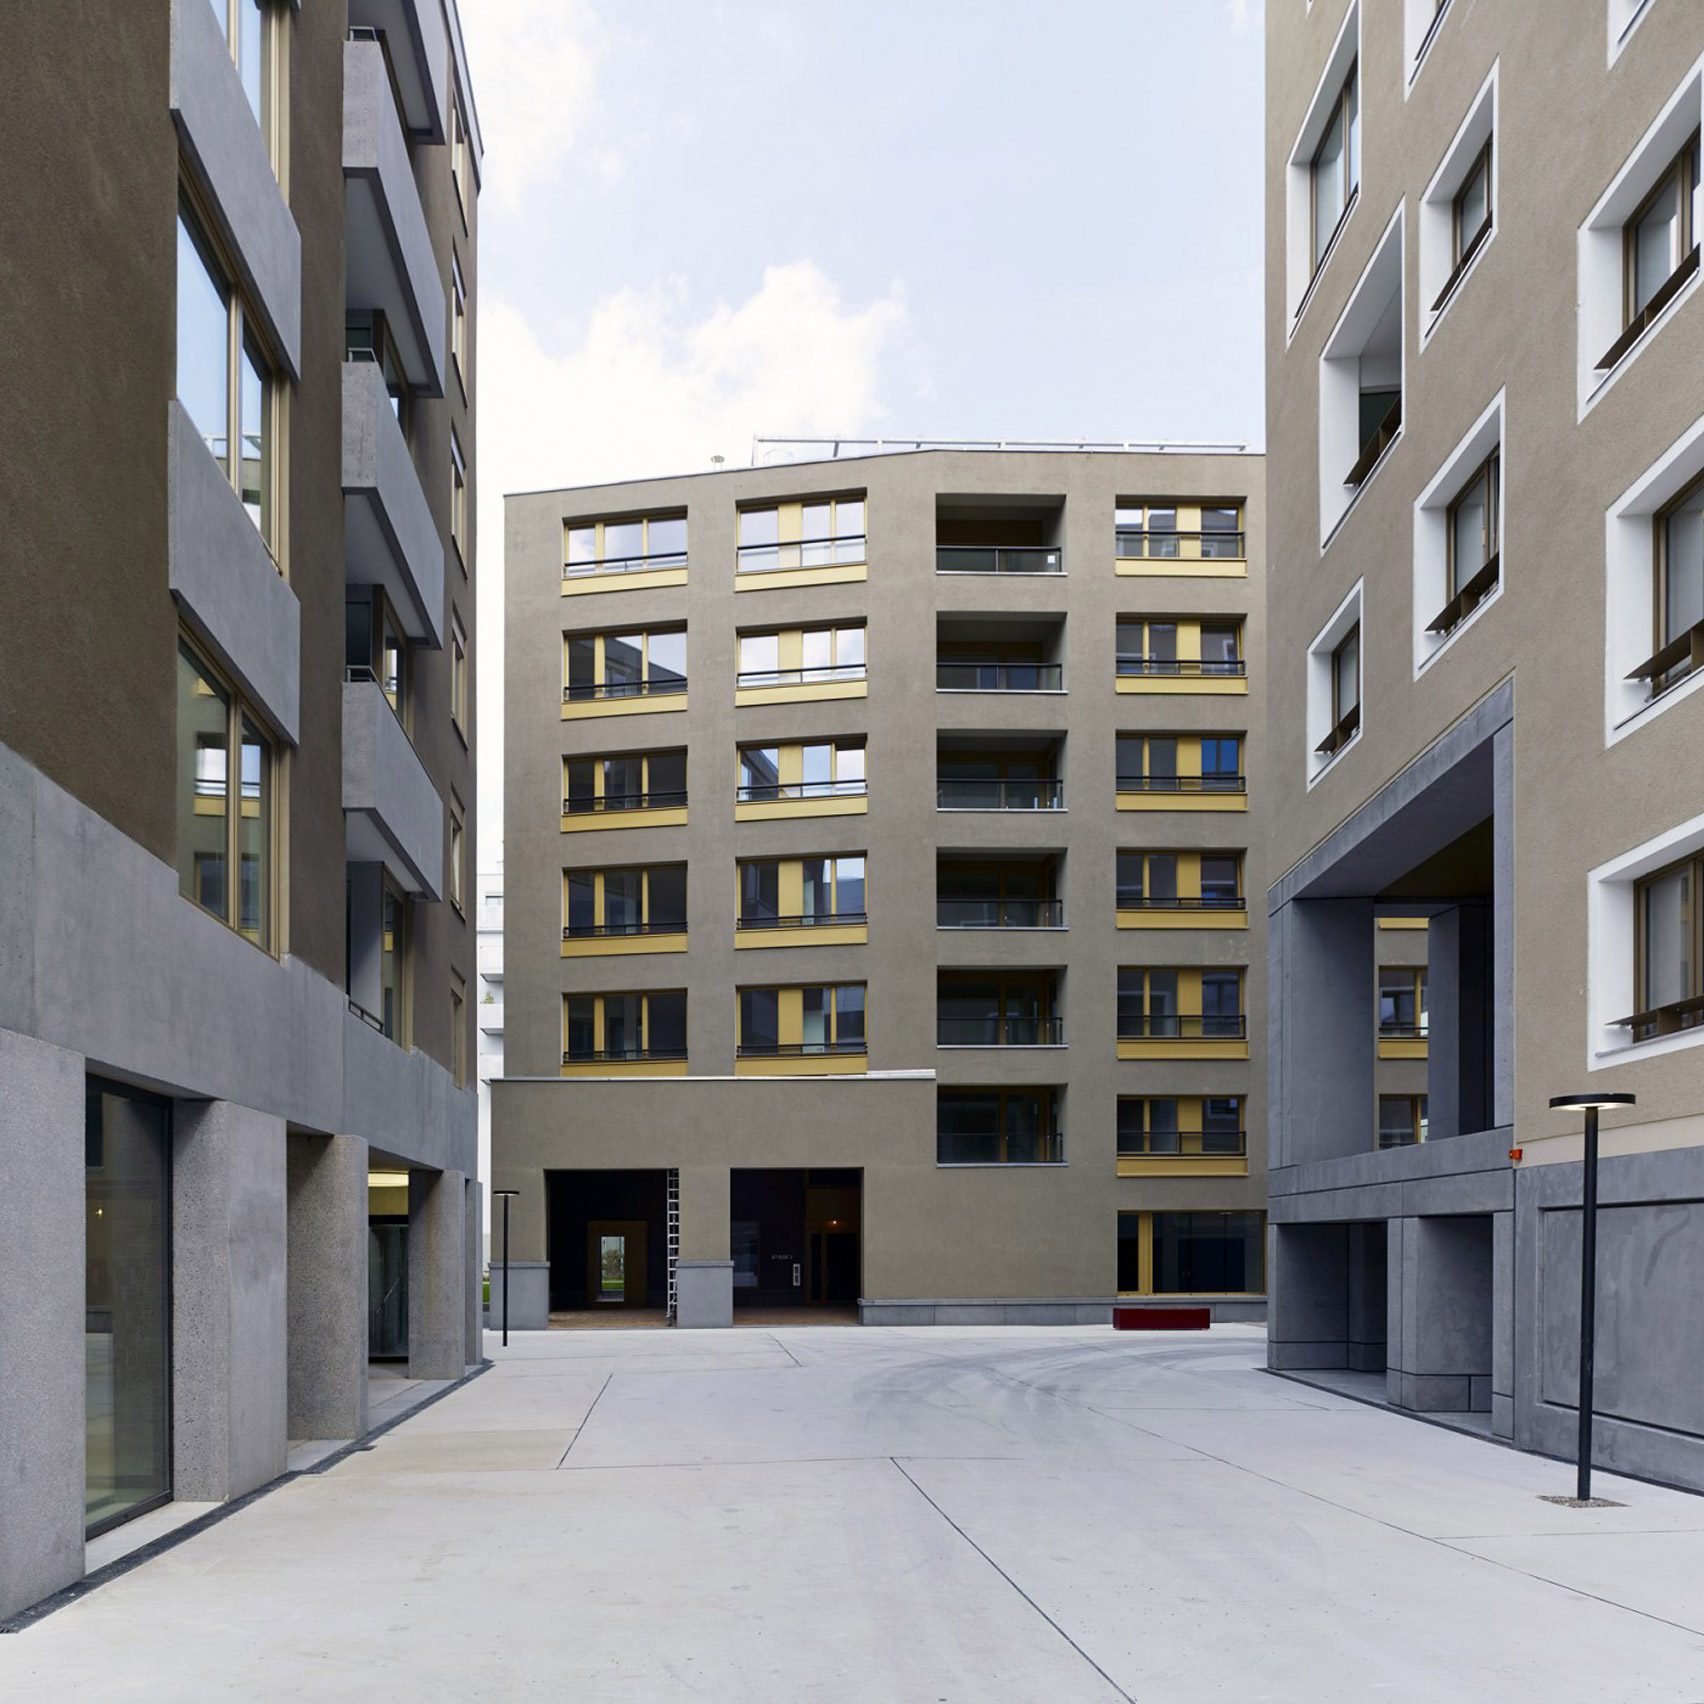 Nordbahnhof housing in Vienna by Sergison Bates